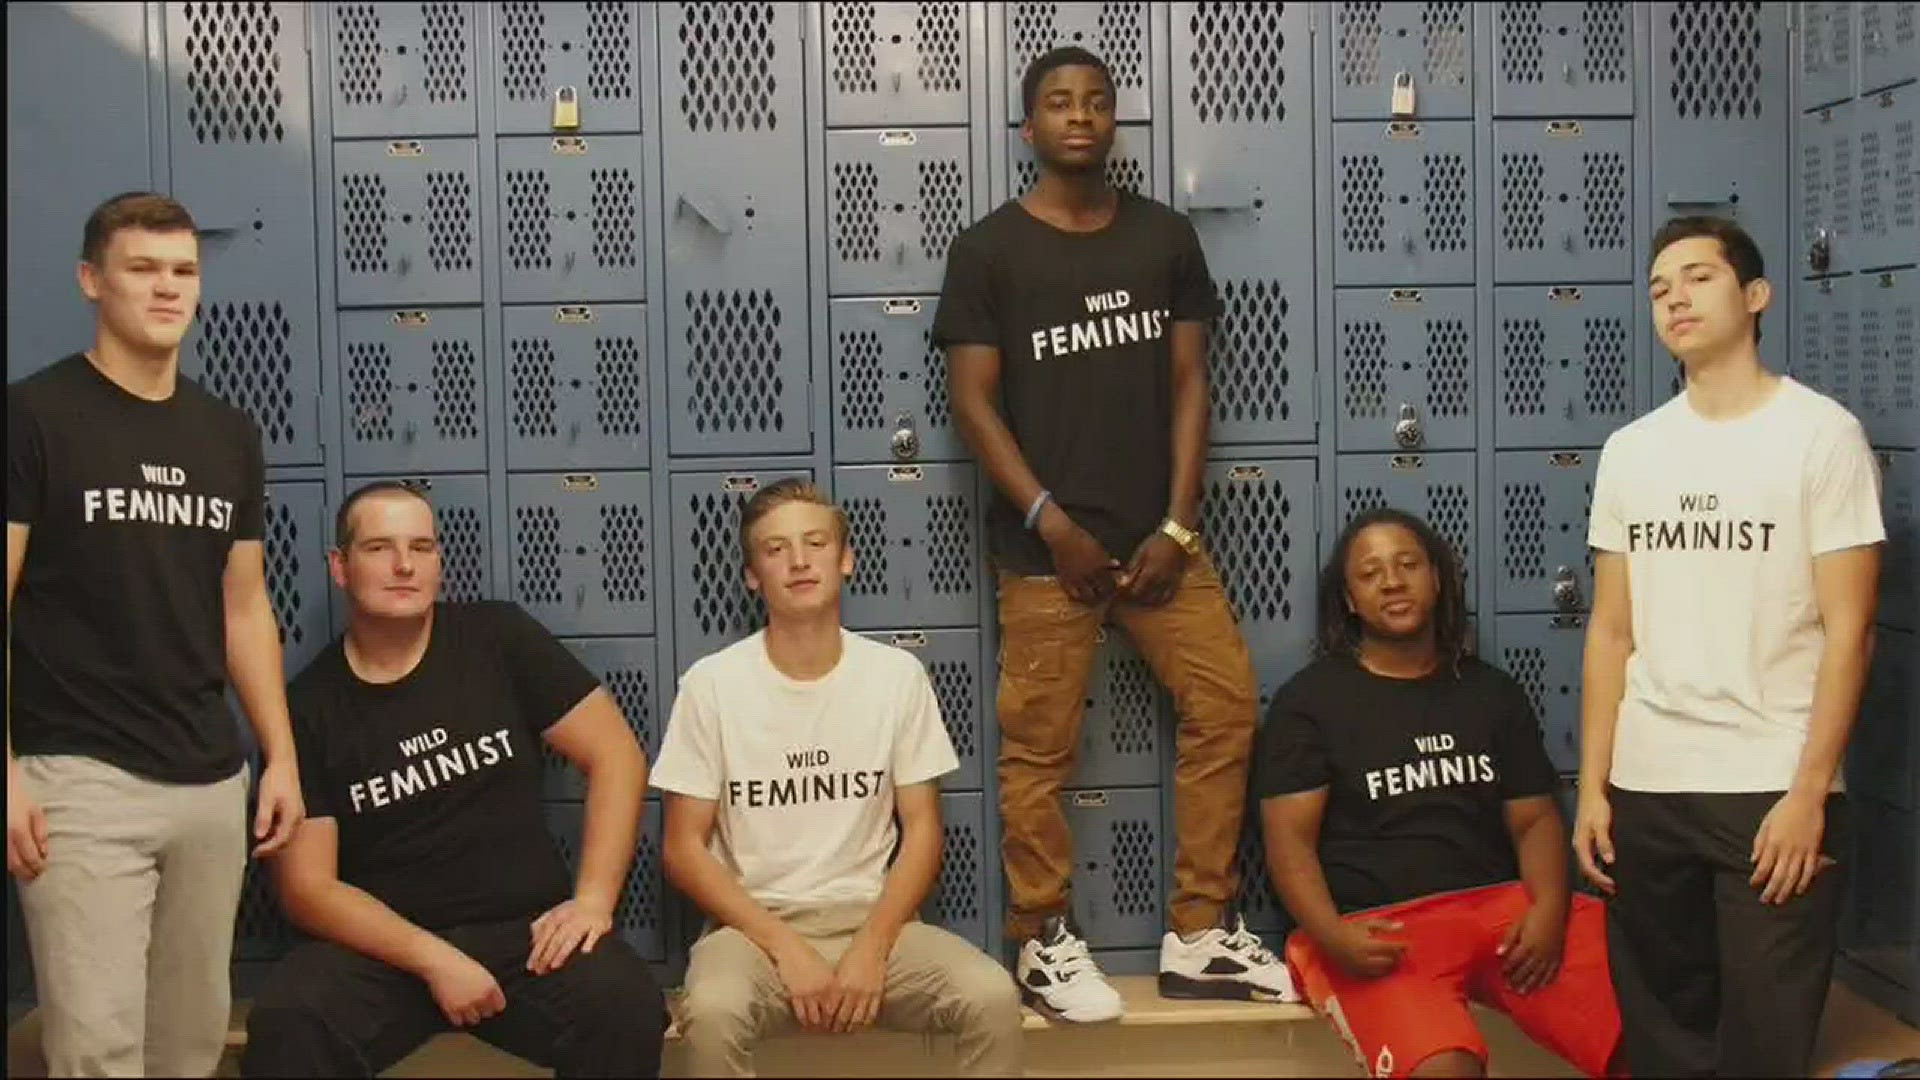 Students going viral for locker room feminism